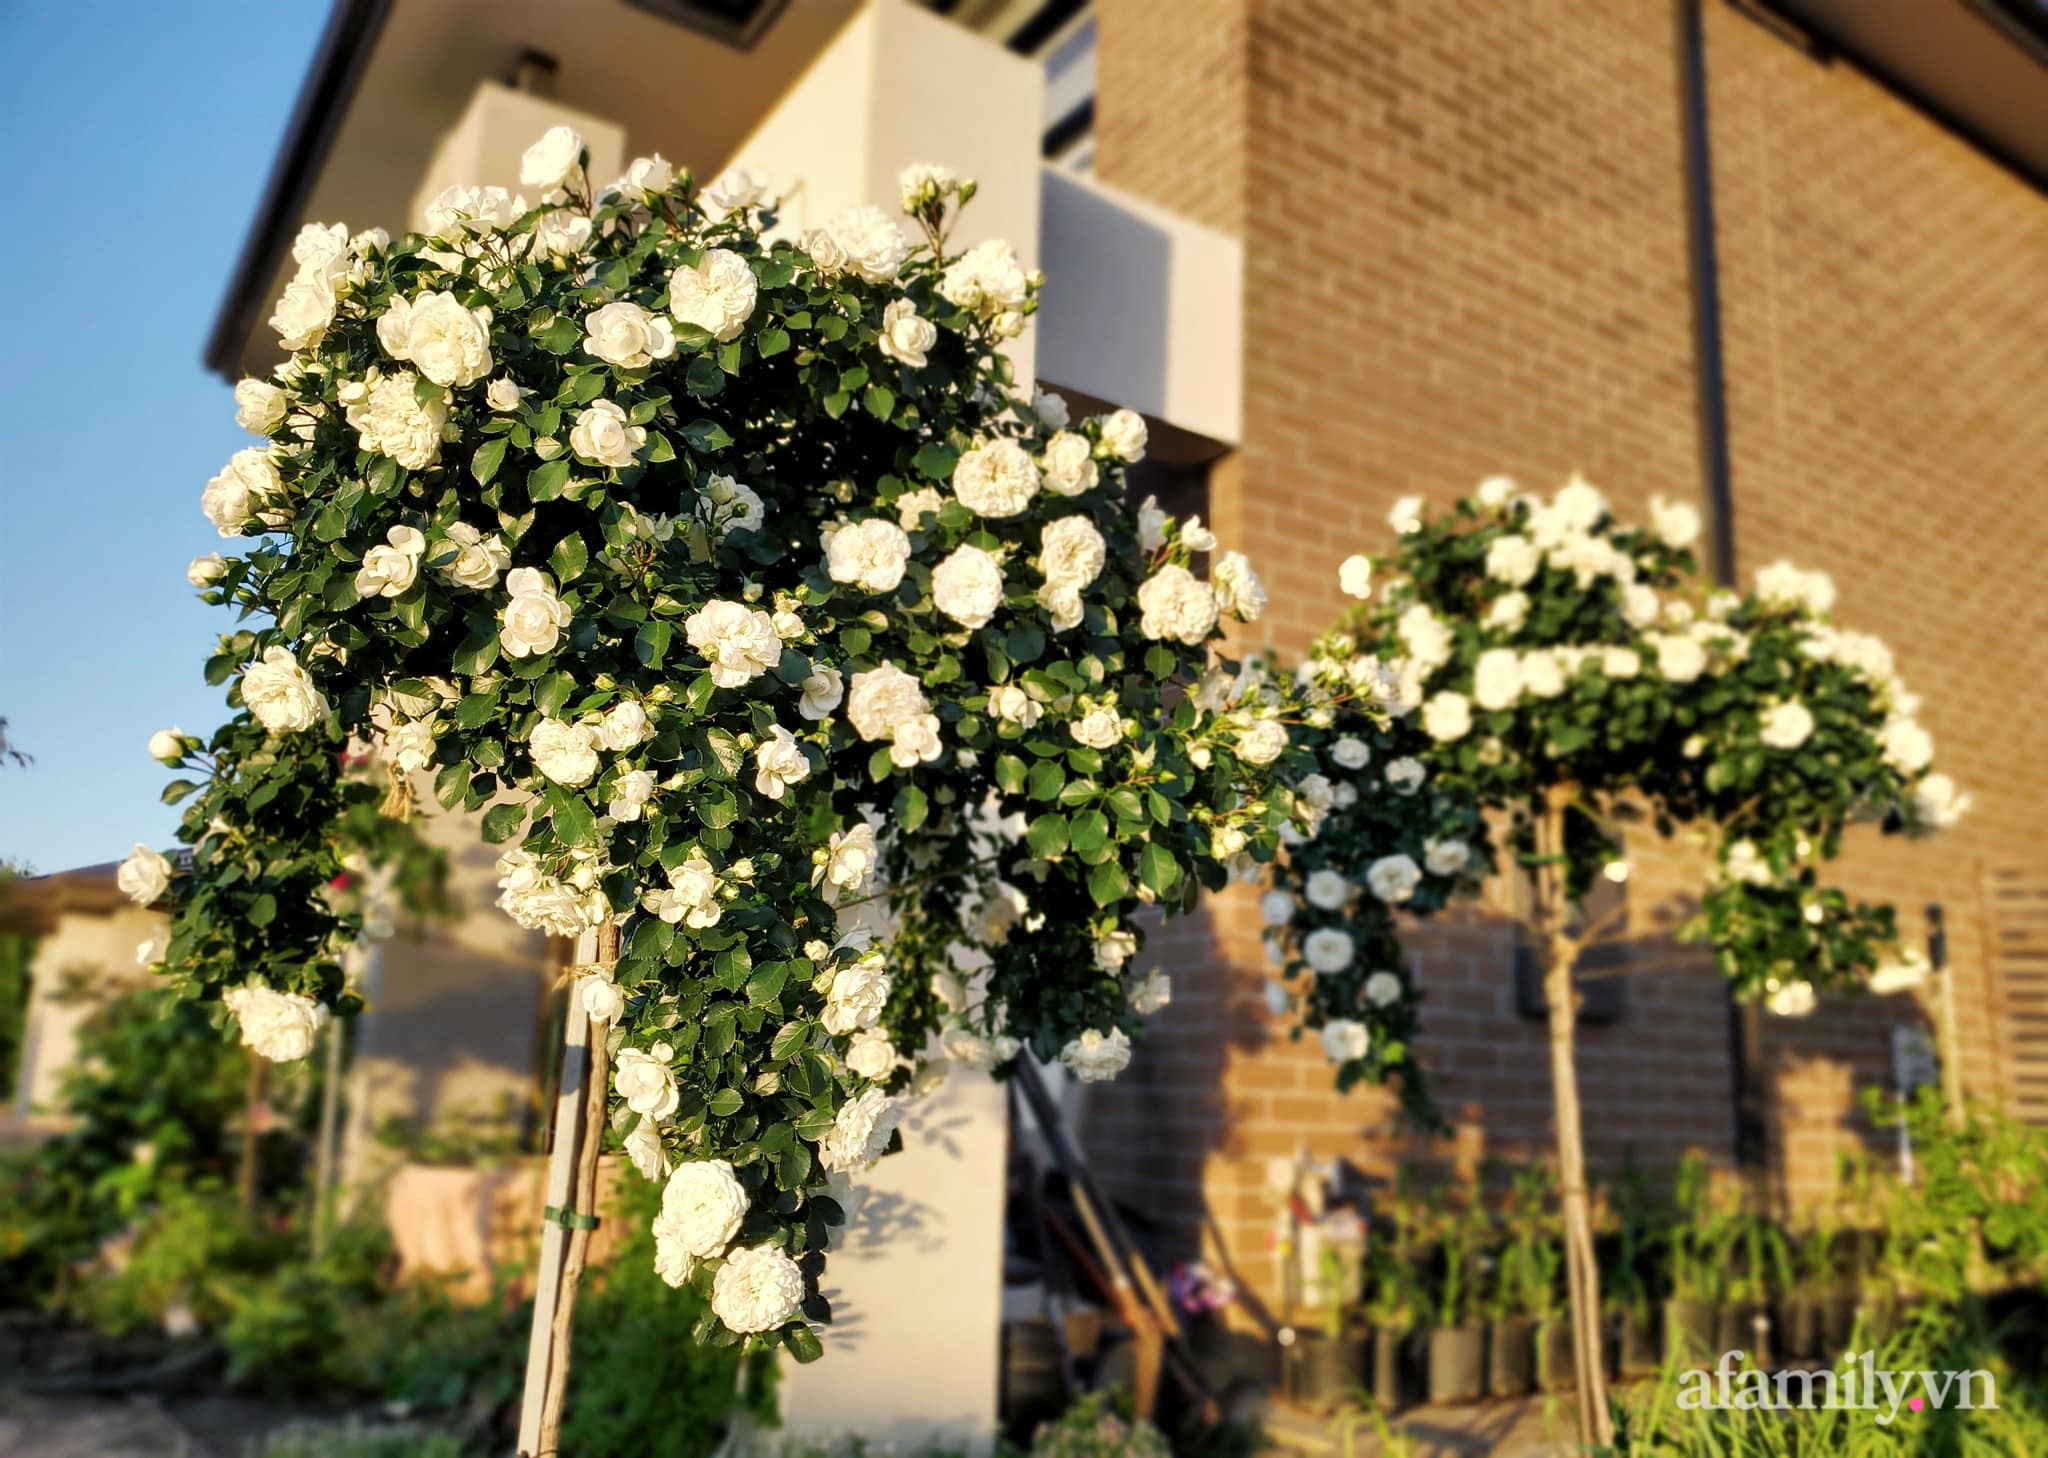 Vườn hồng 250m² ngát hương rực rỡ sắc màu đẹp như cổ tích của mẹ Việt ở Úc - Ảnh 15.